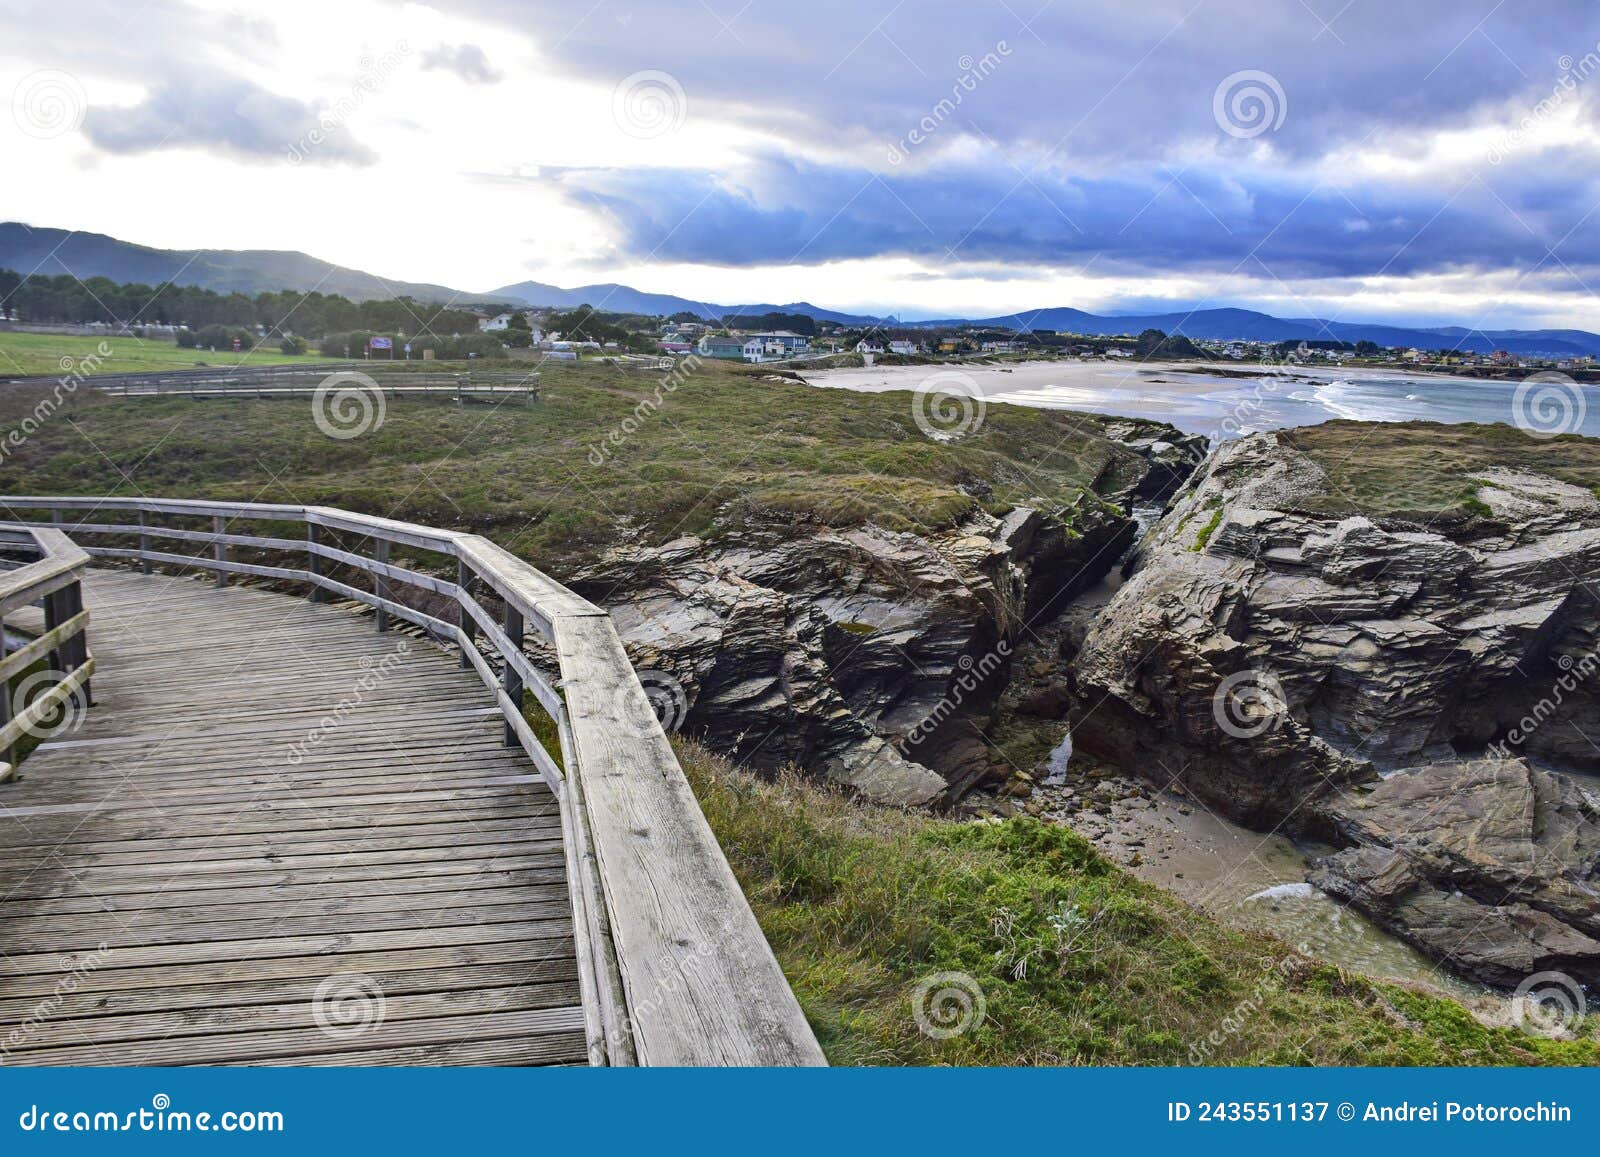 a wooden path along the cathedral beach. praia de augas santas, ribadeo